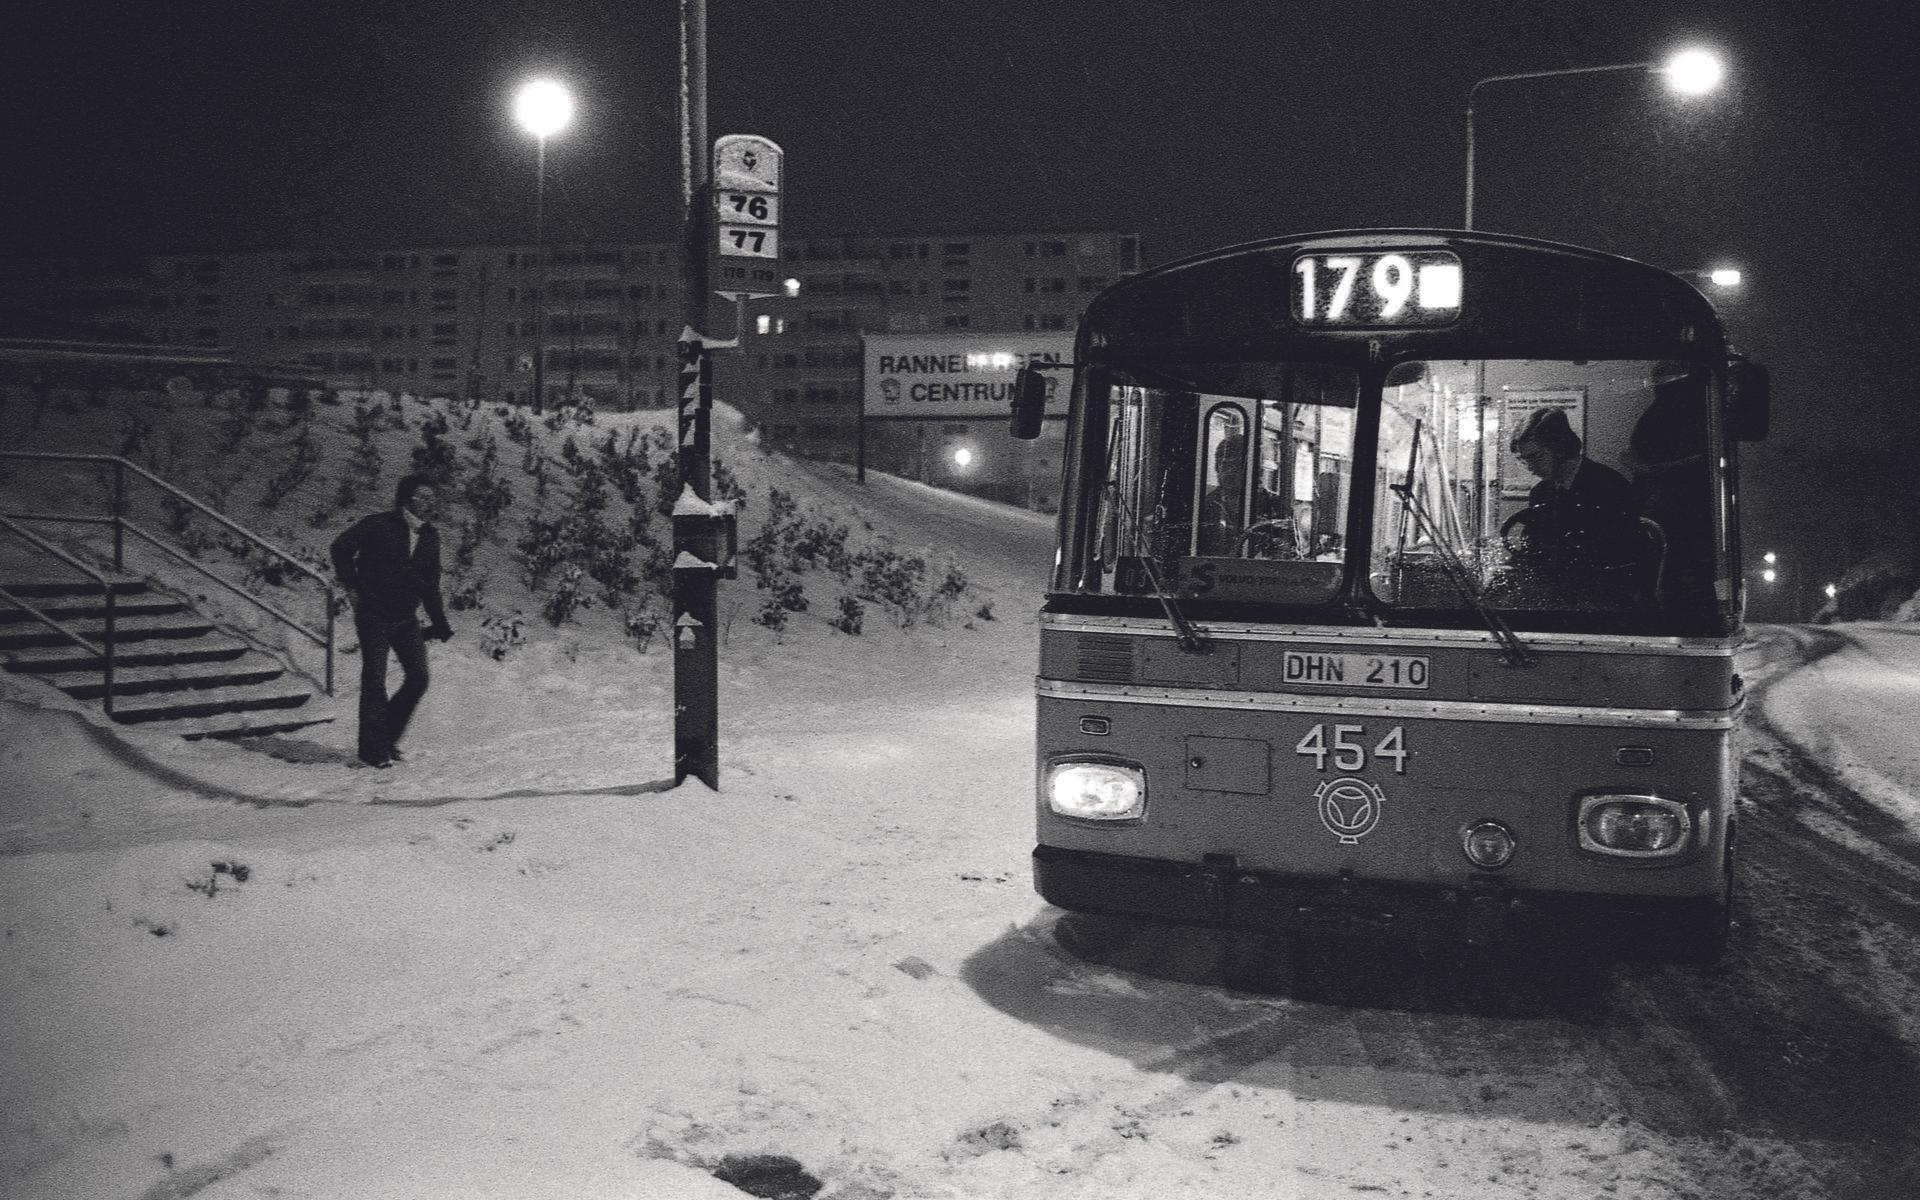 Leif Persson småspringer till bussen på väg till Volvo Torslandaverken en januarieftermiddag år 1977.Det finns ett drag av nästan maskinmässig stadsplanering över bostadsområdet Rannebergens snabba tillkomst. År 1966 införlivades detta skogsklädda berg tillsammans med resten av Angered i Göteborg. Det var ett stycke landsbygd, nästan vildmark, en dryg mil från Göteborgs centrum. År 1971 rullade kranarna och grävskoporna upp på berget. 1974 stod 1 600 lägenheter klara. En ny värld var klar att flytta in i. Ett slags nybyggarkänsla präglar dessa reportagefoton från mitten av 1970-talet.